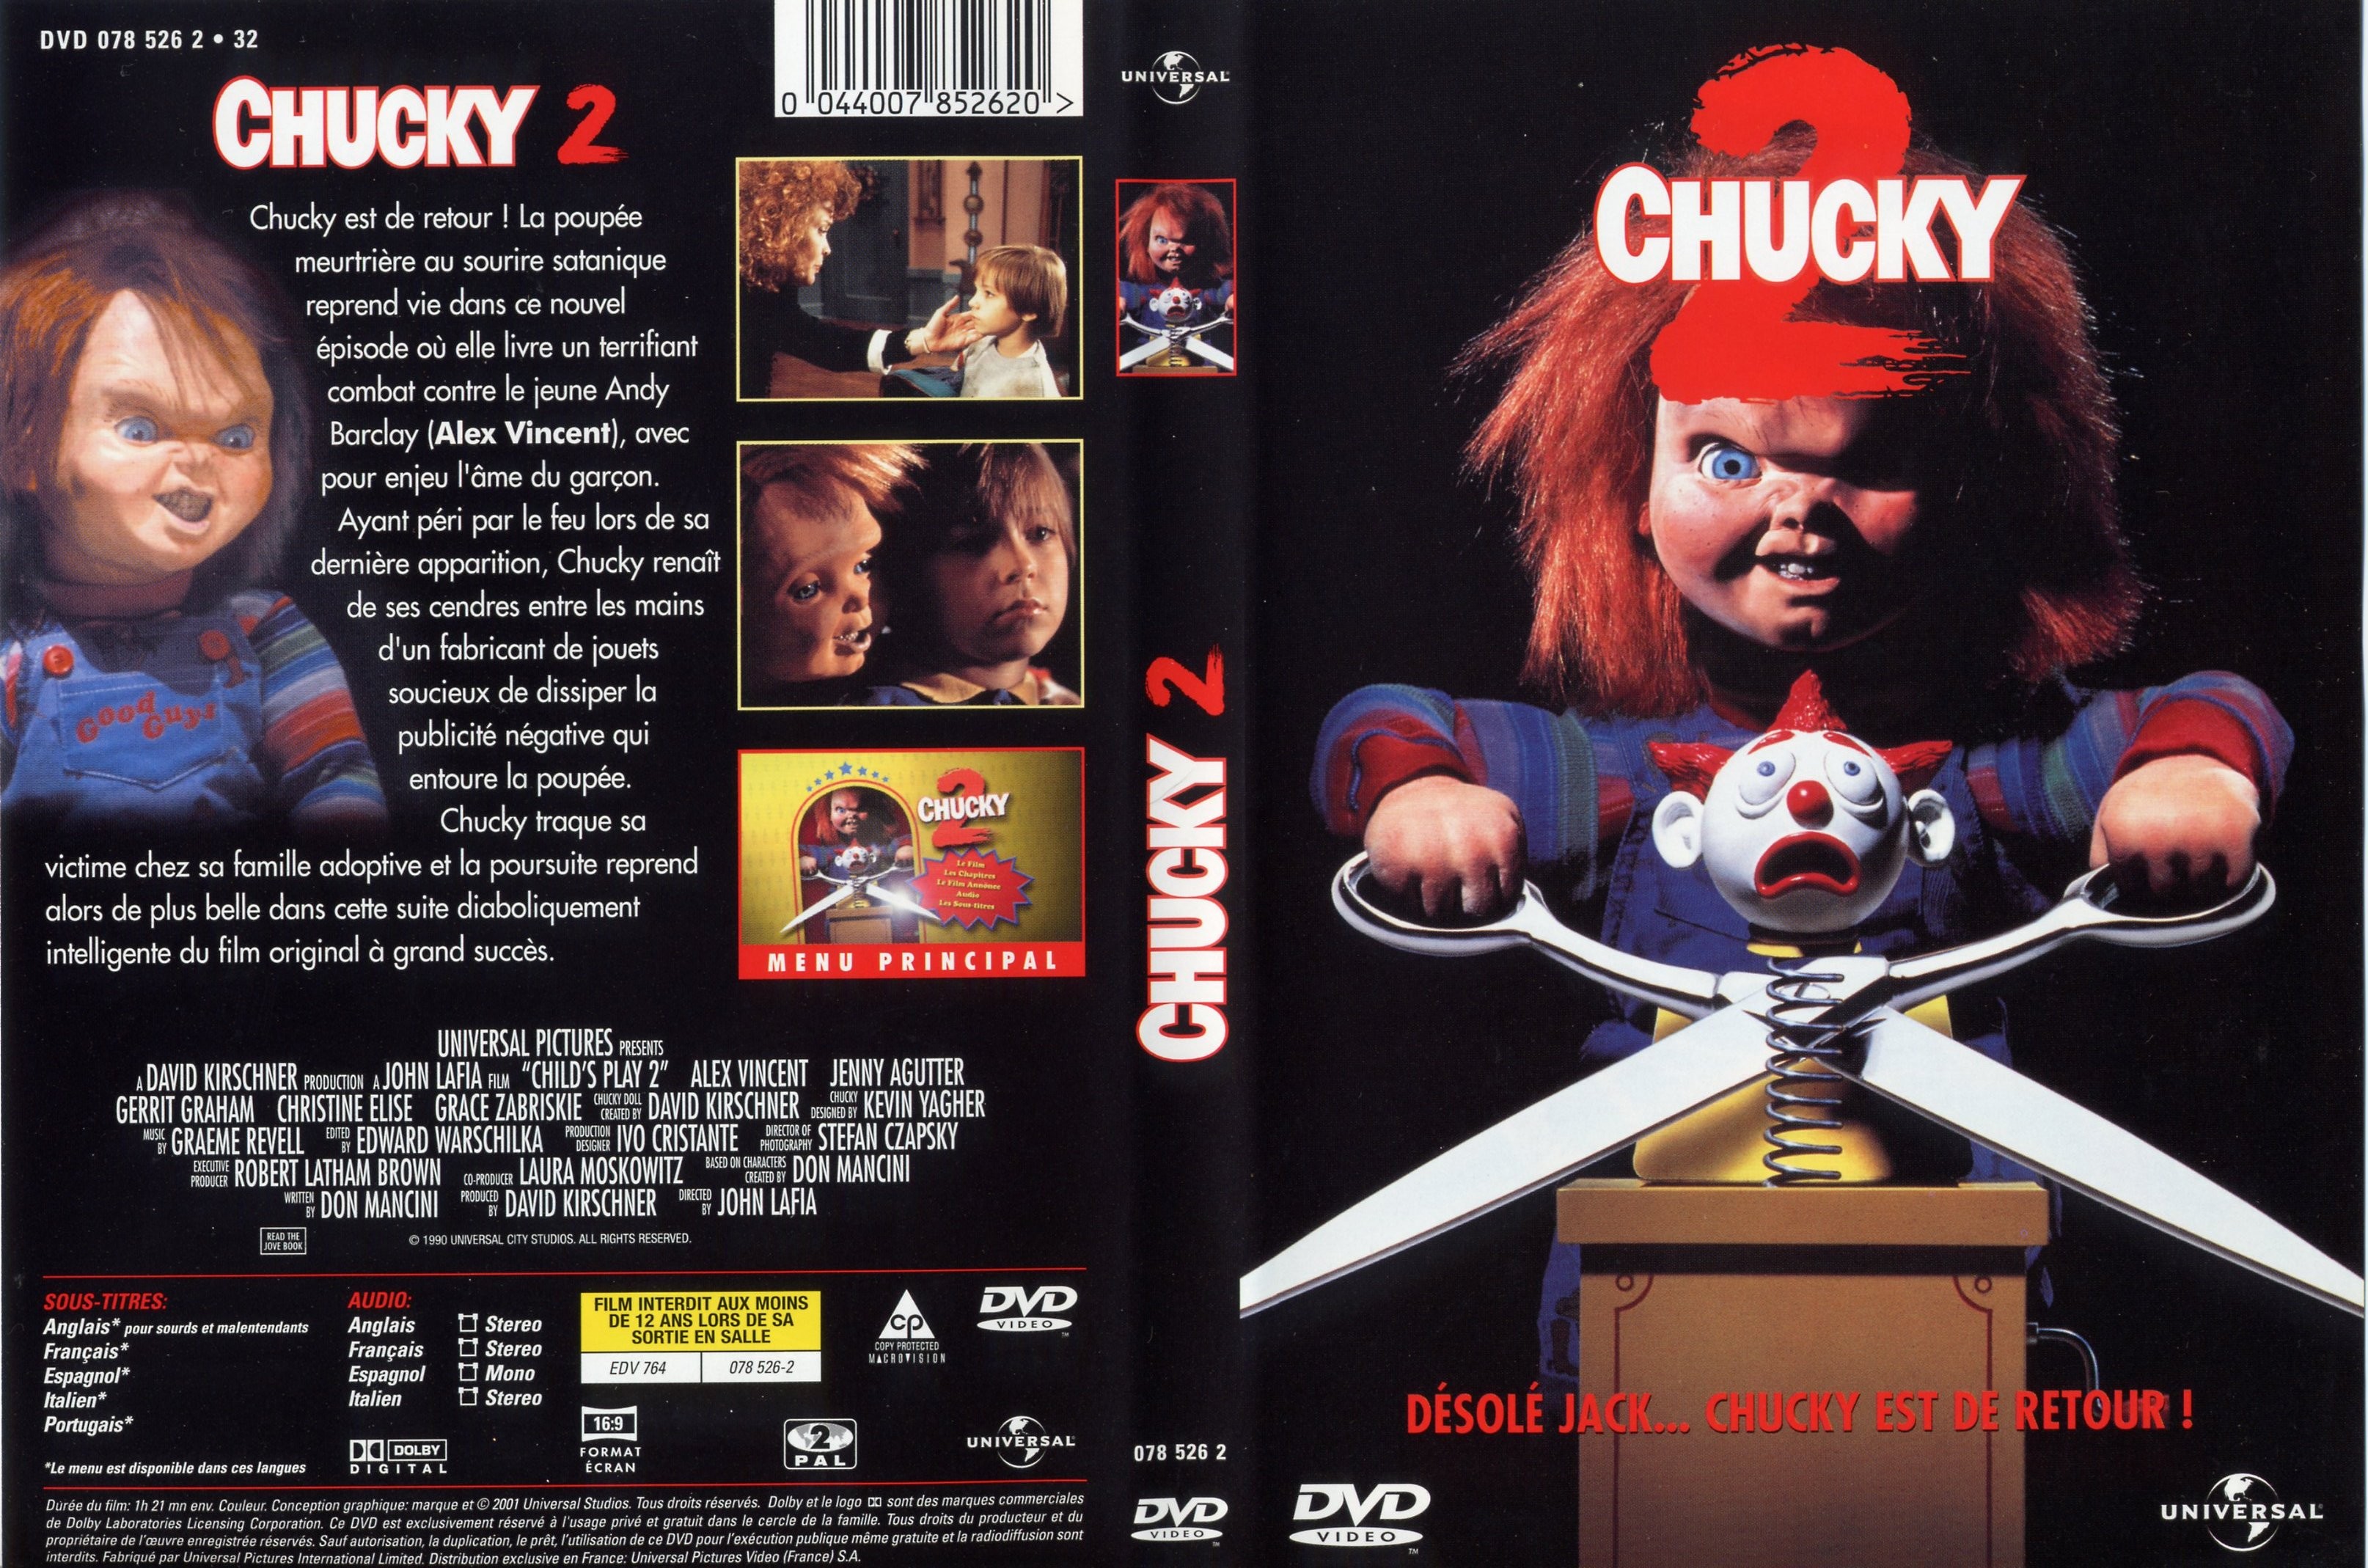 Jaquette DVD Chucky 2